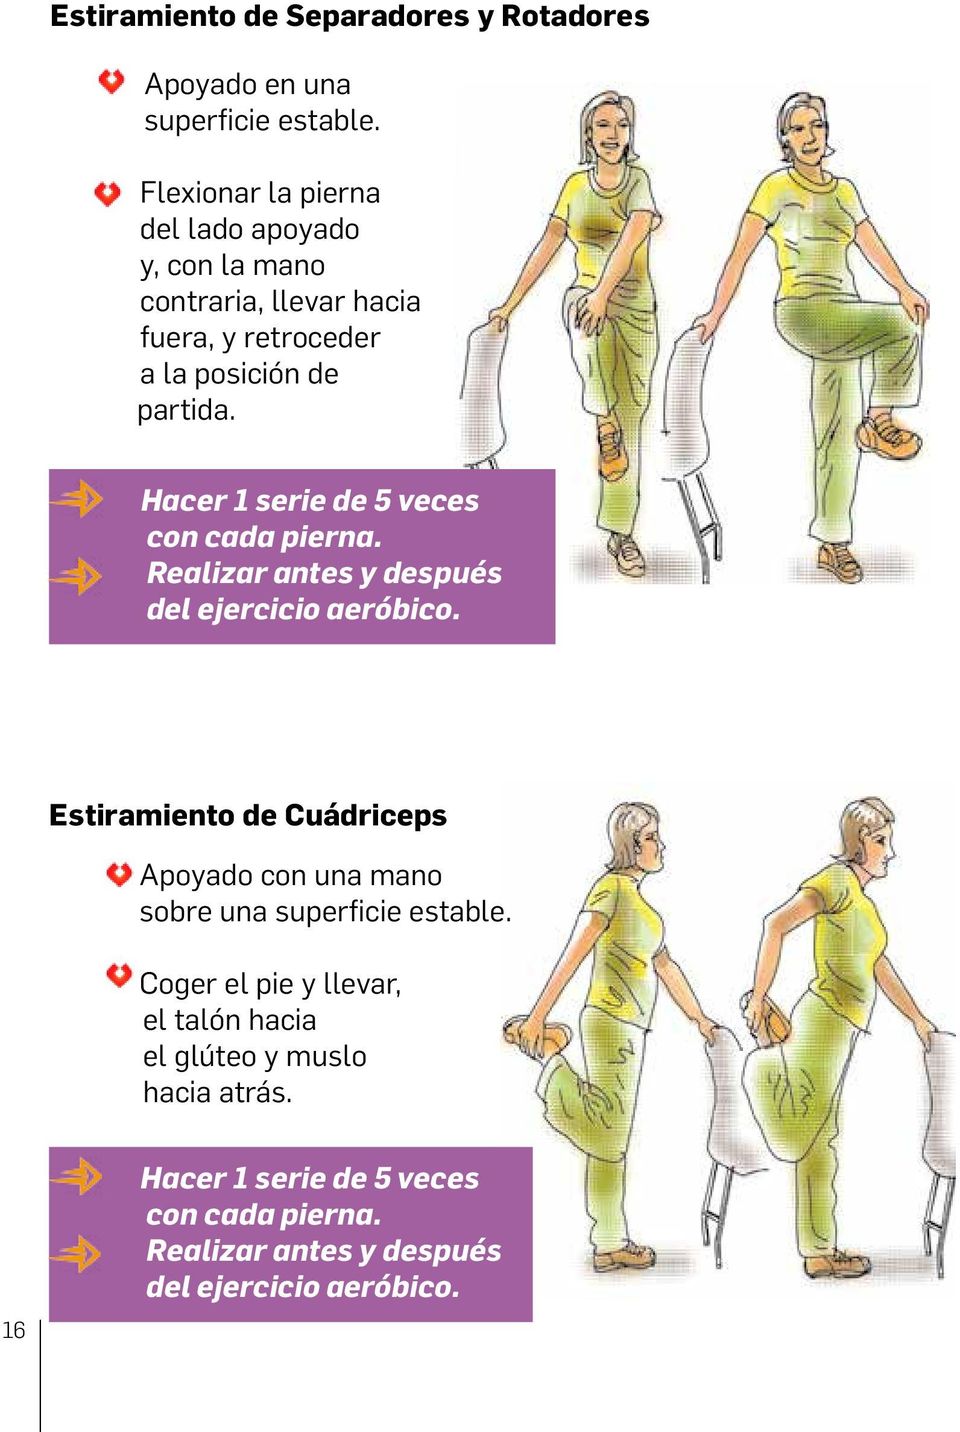 Realice con cada el pierna. ejercicio antes y después Realizar del ejercicio antes y después aeróbico. del ejercicio aeróbico.